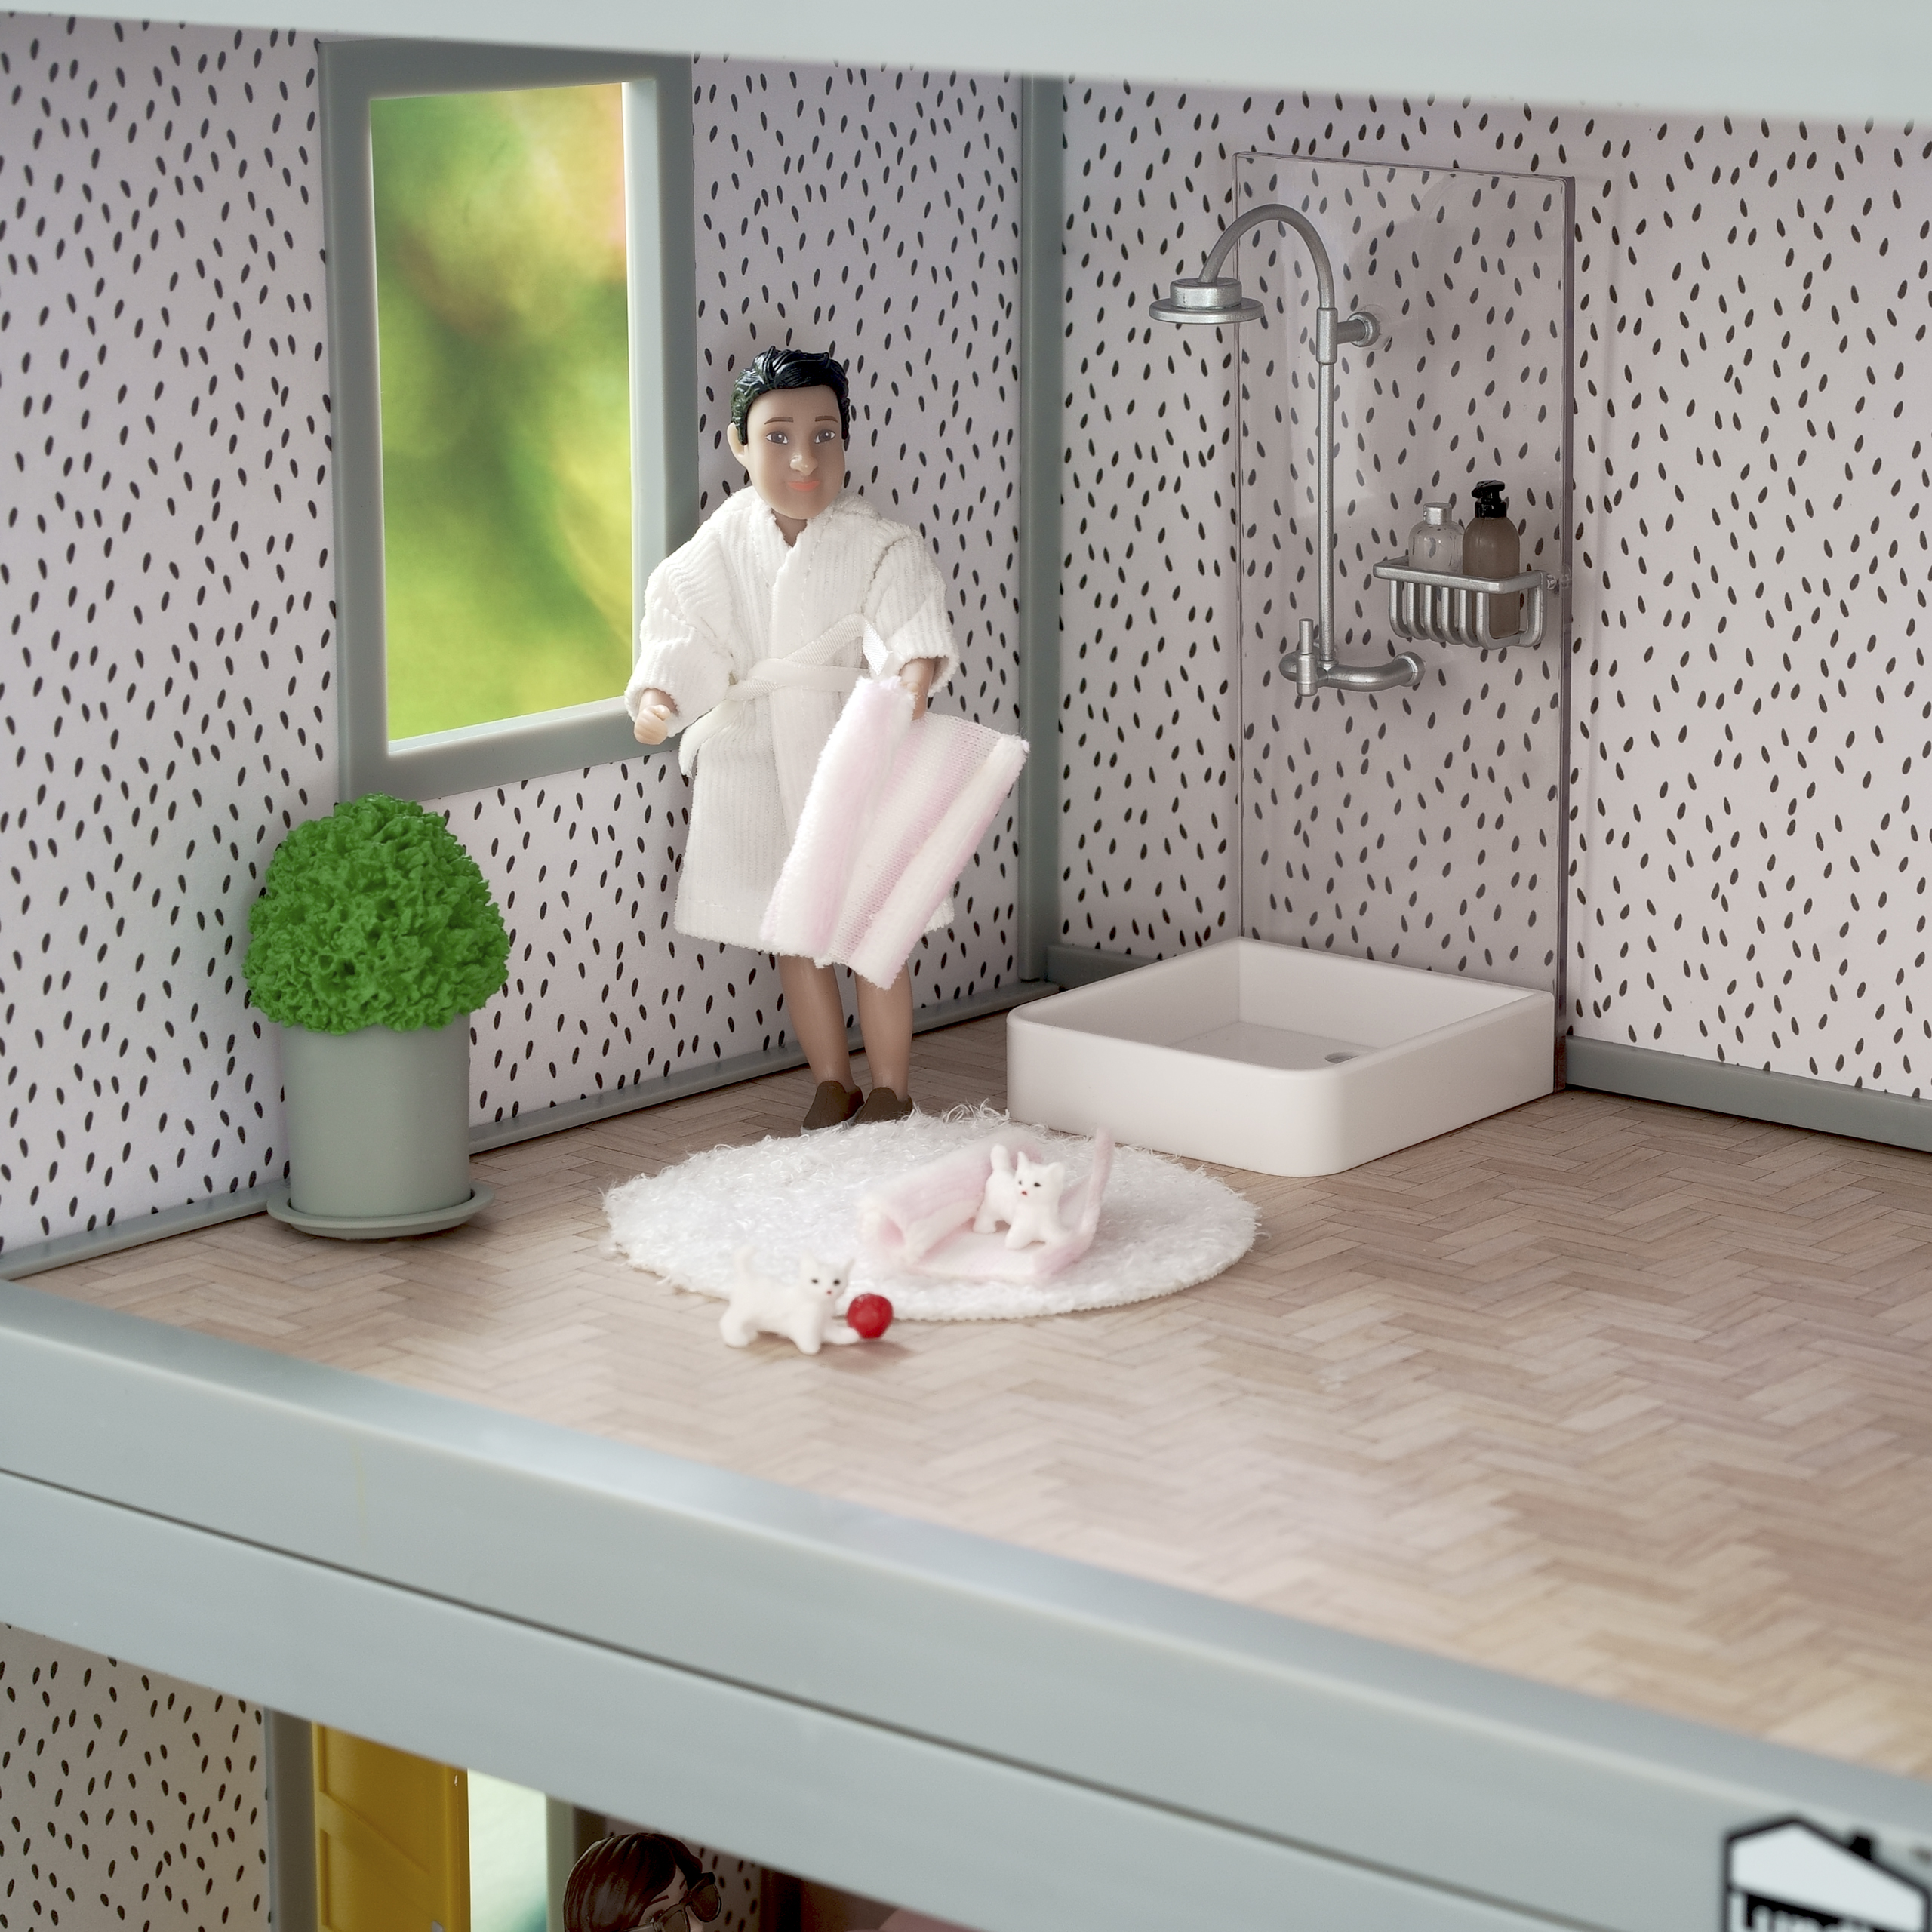 Lundby lundby dollhouse furniture shower set